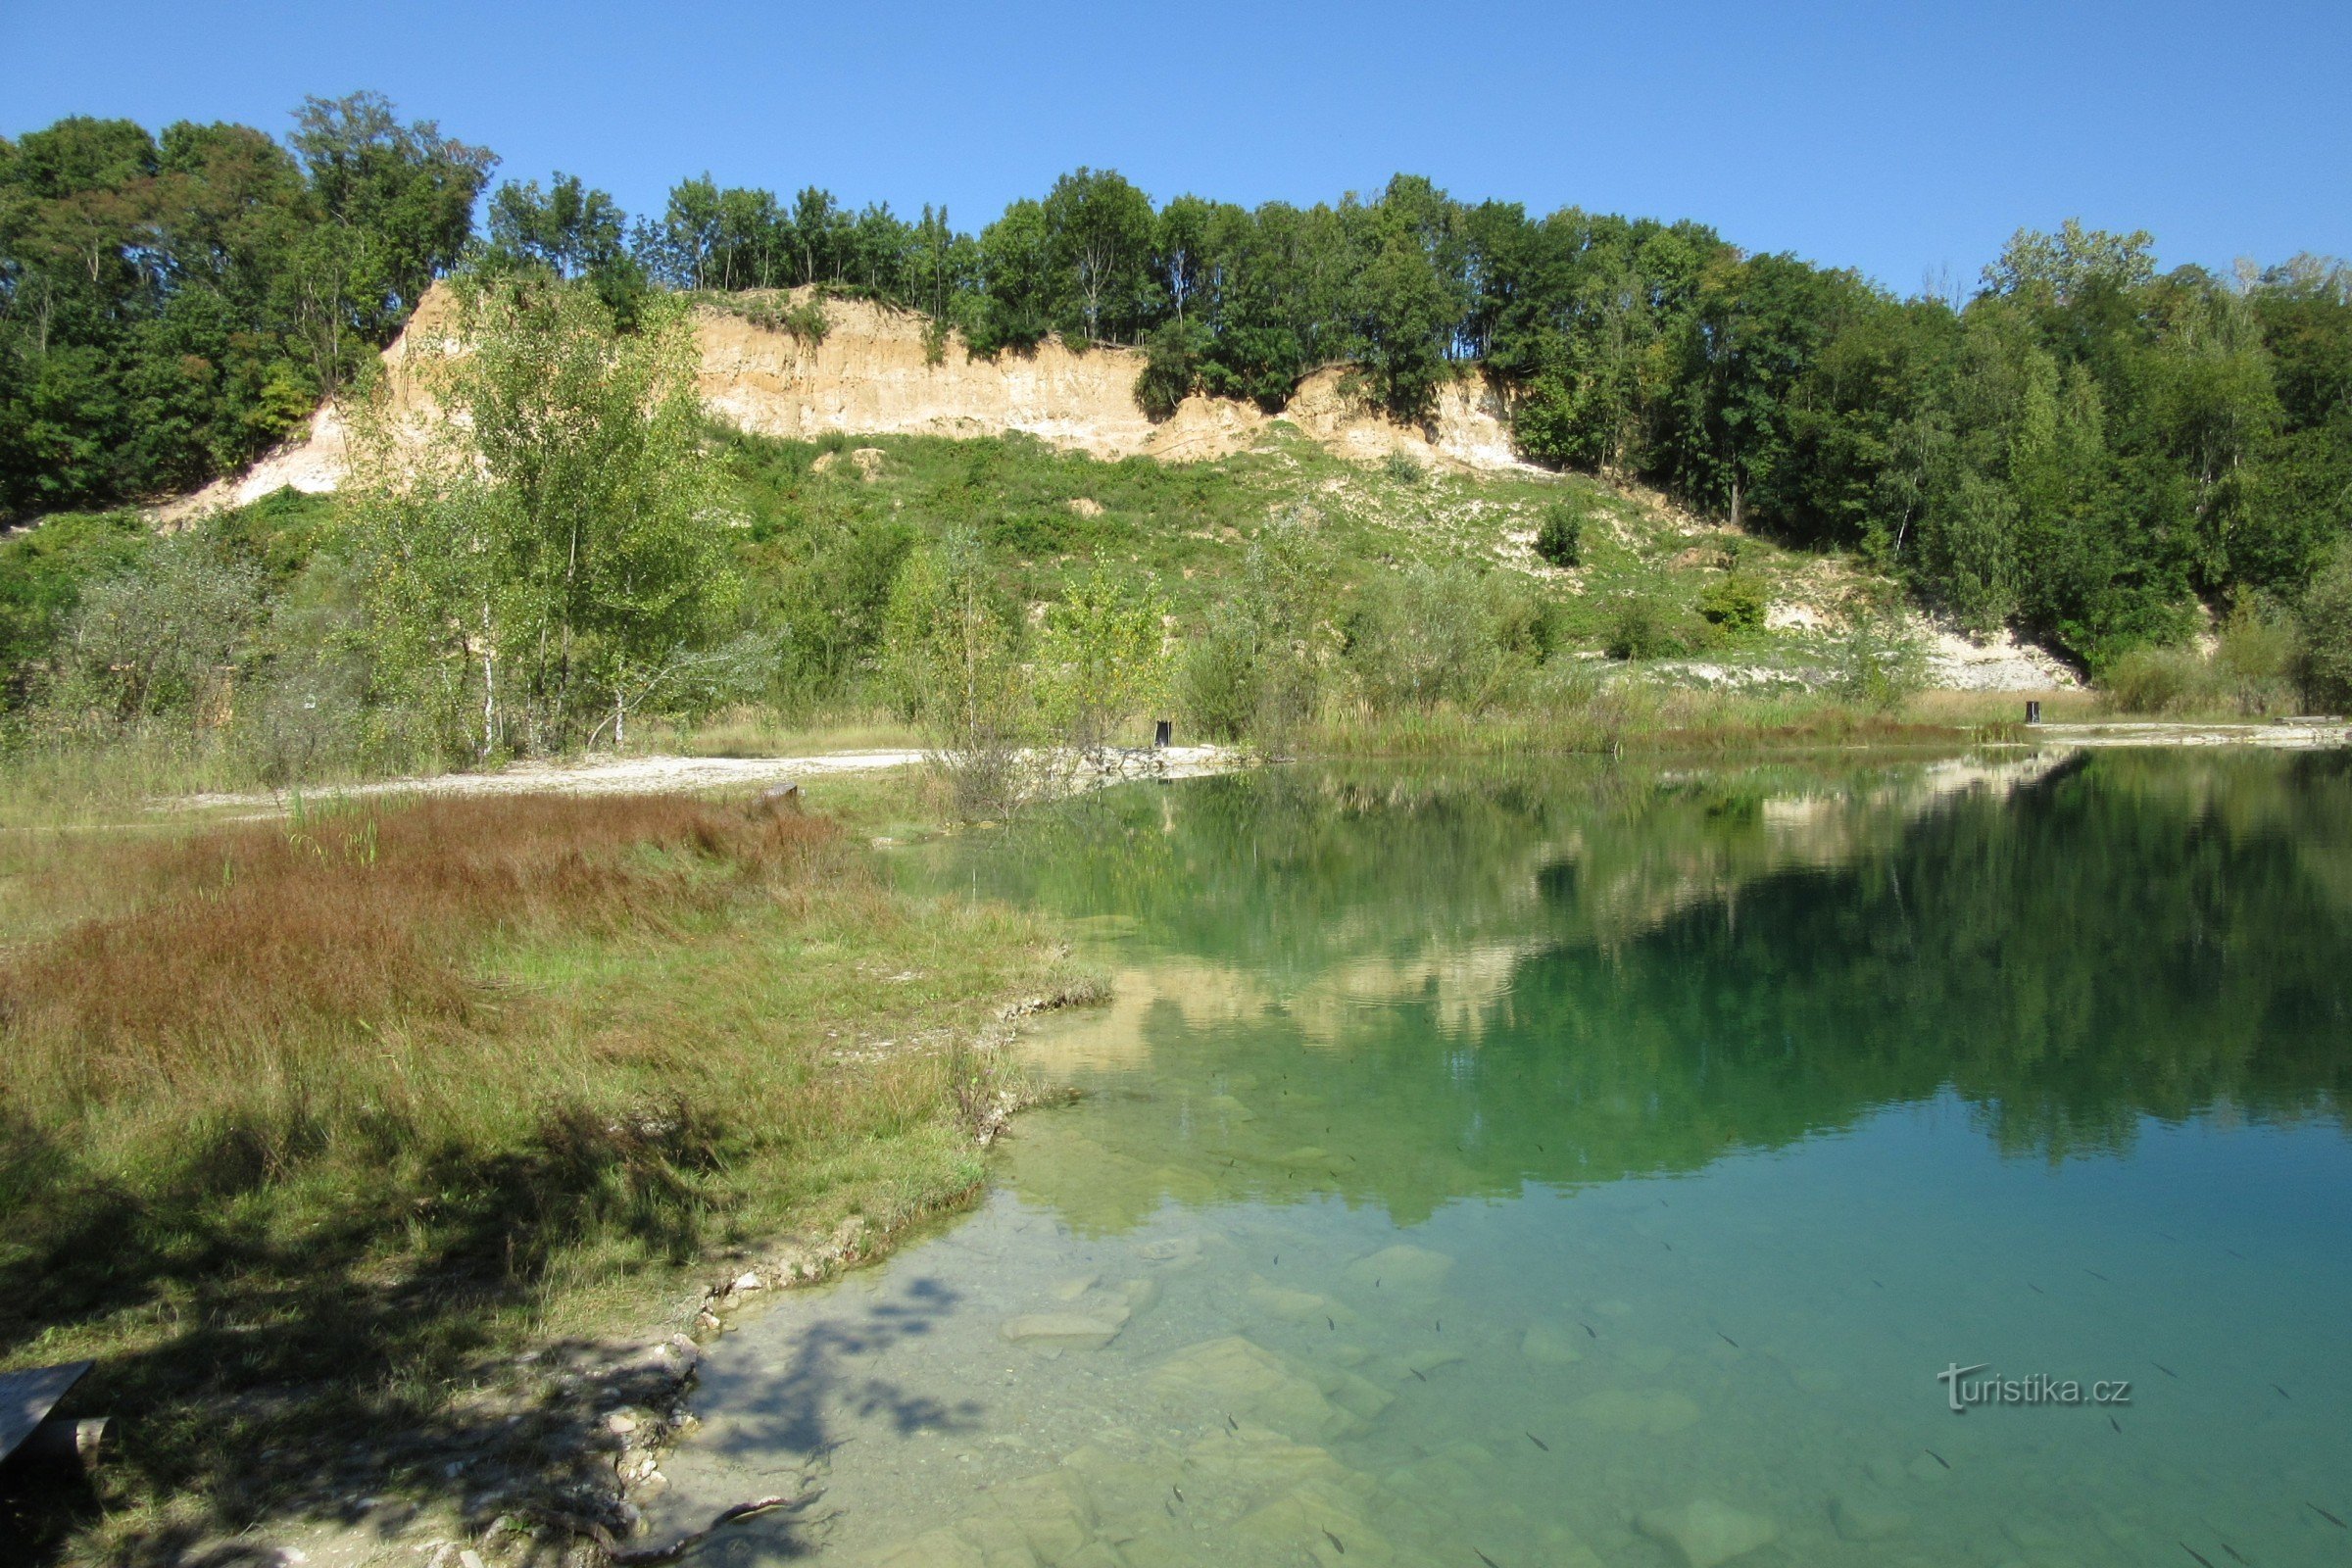 Kurovice quarry